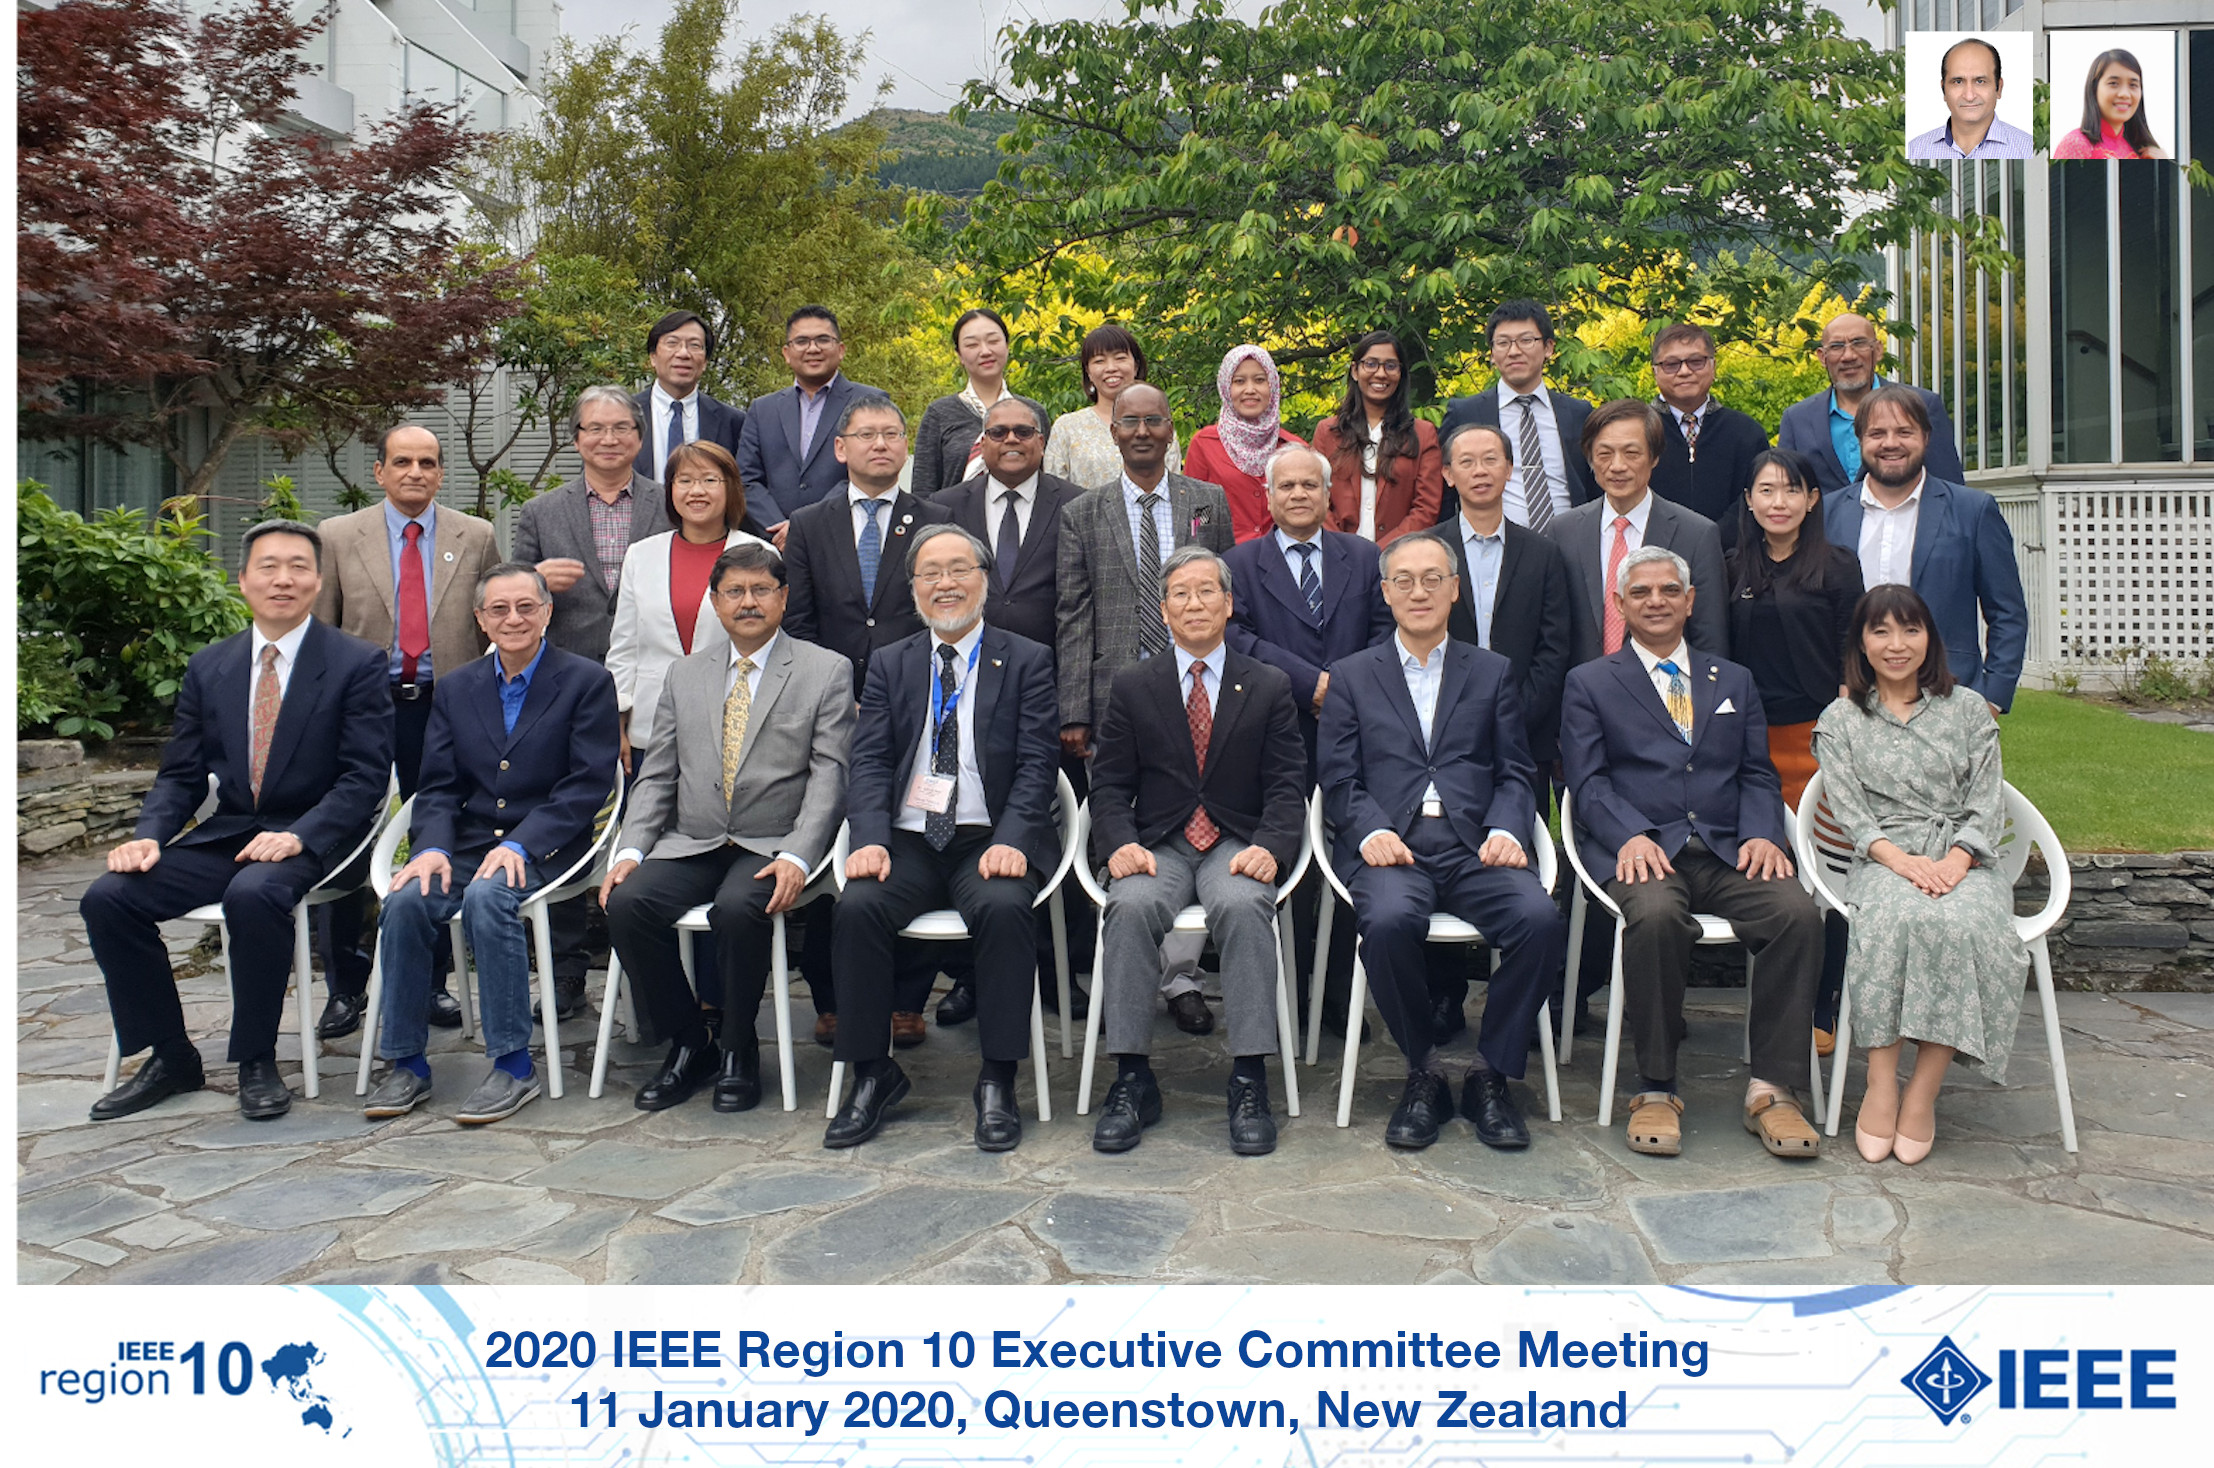 2020 IEEE Region 10 Executive Committee members